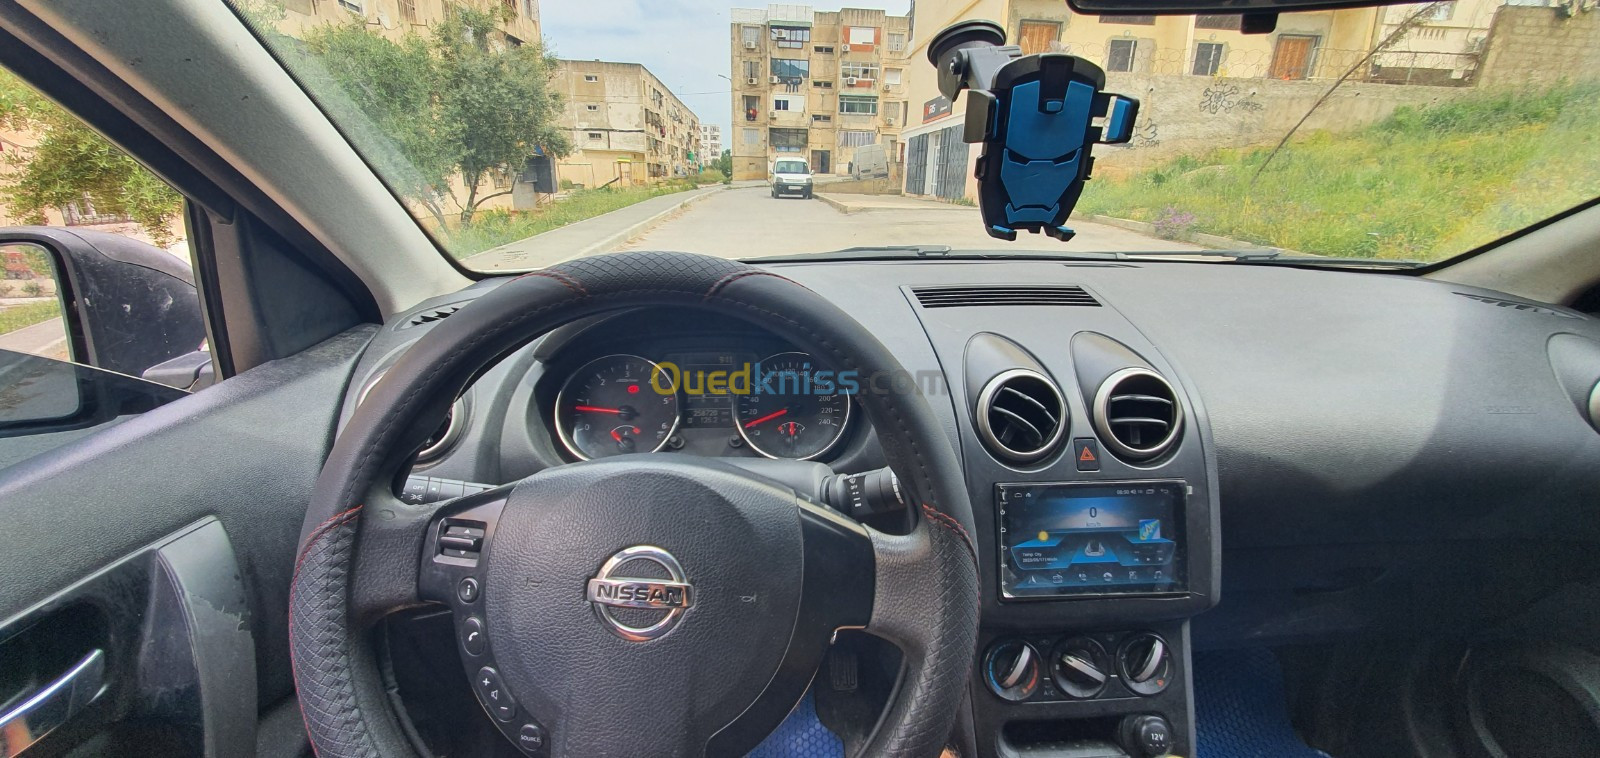 Nissan Qashqai 2014 